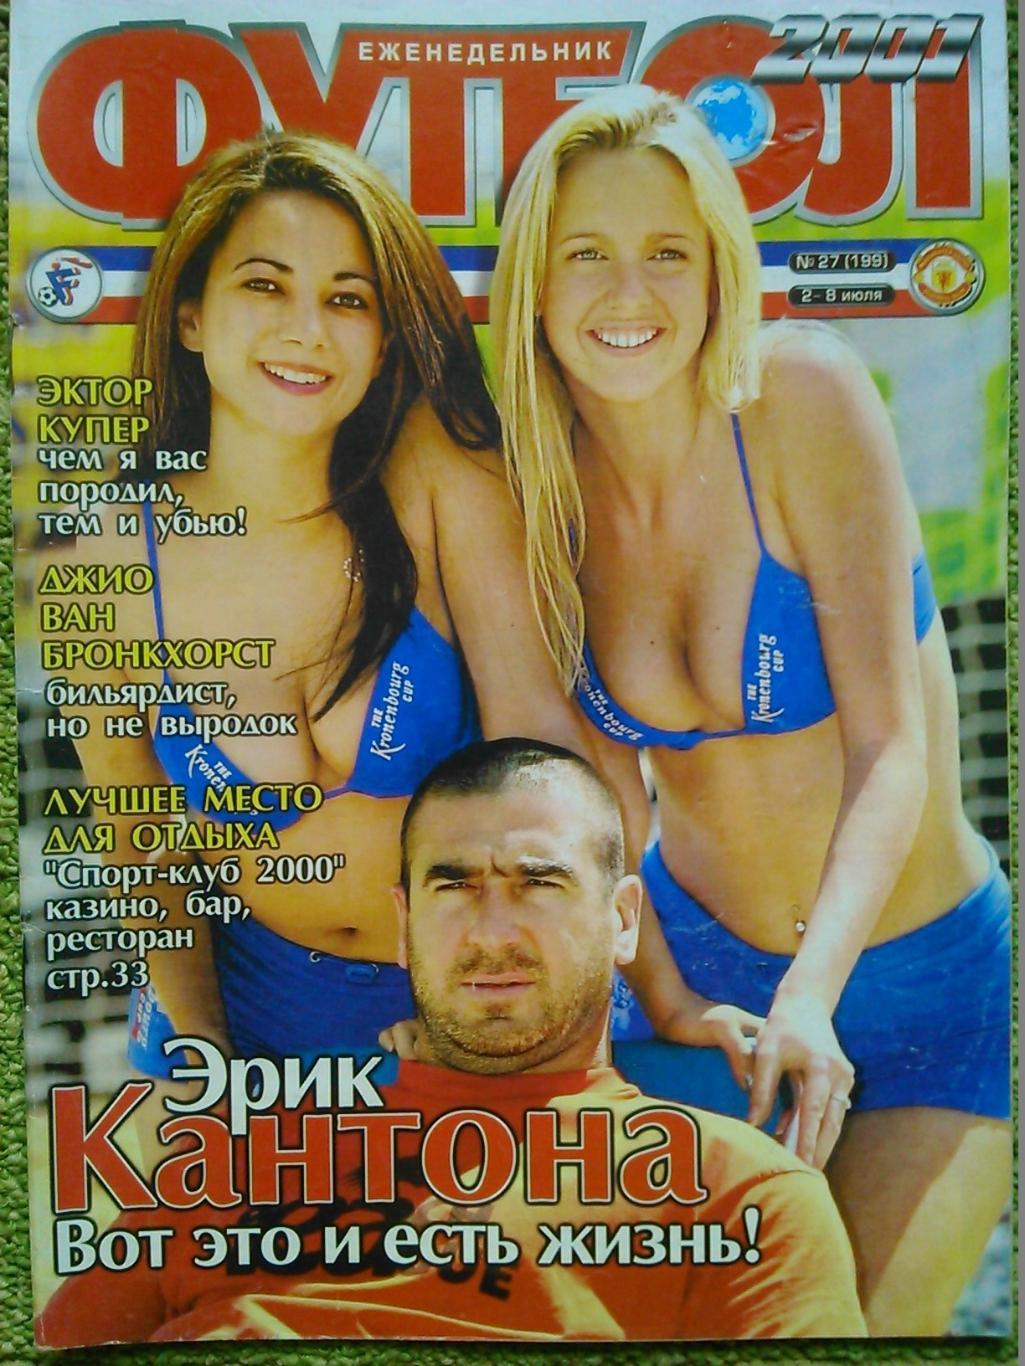 Футбол (Украина) №27.(199.)2001.Пост ер-Г.Хаджи/Э.Купер. Оптом скидки до 50%!